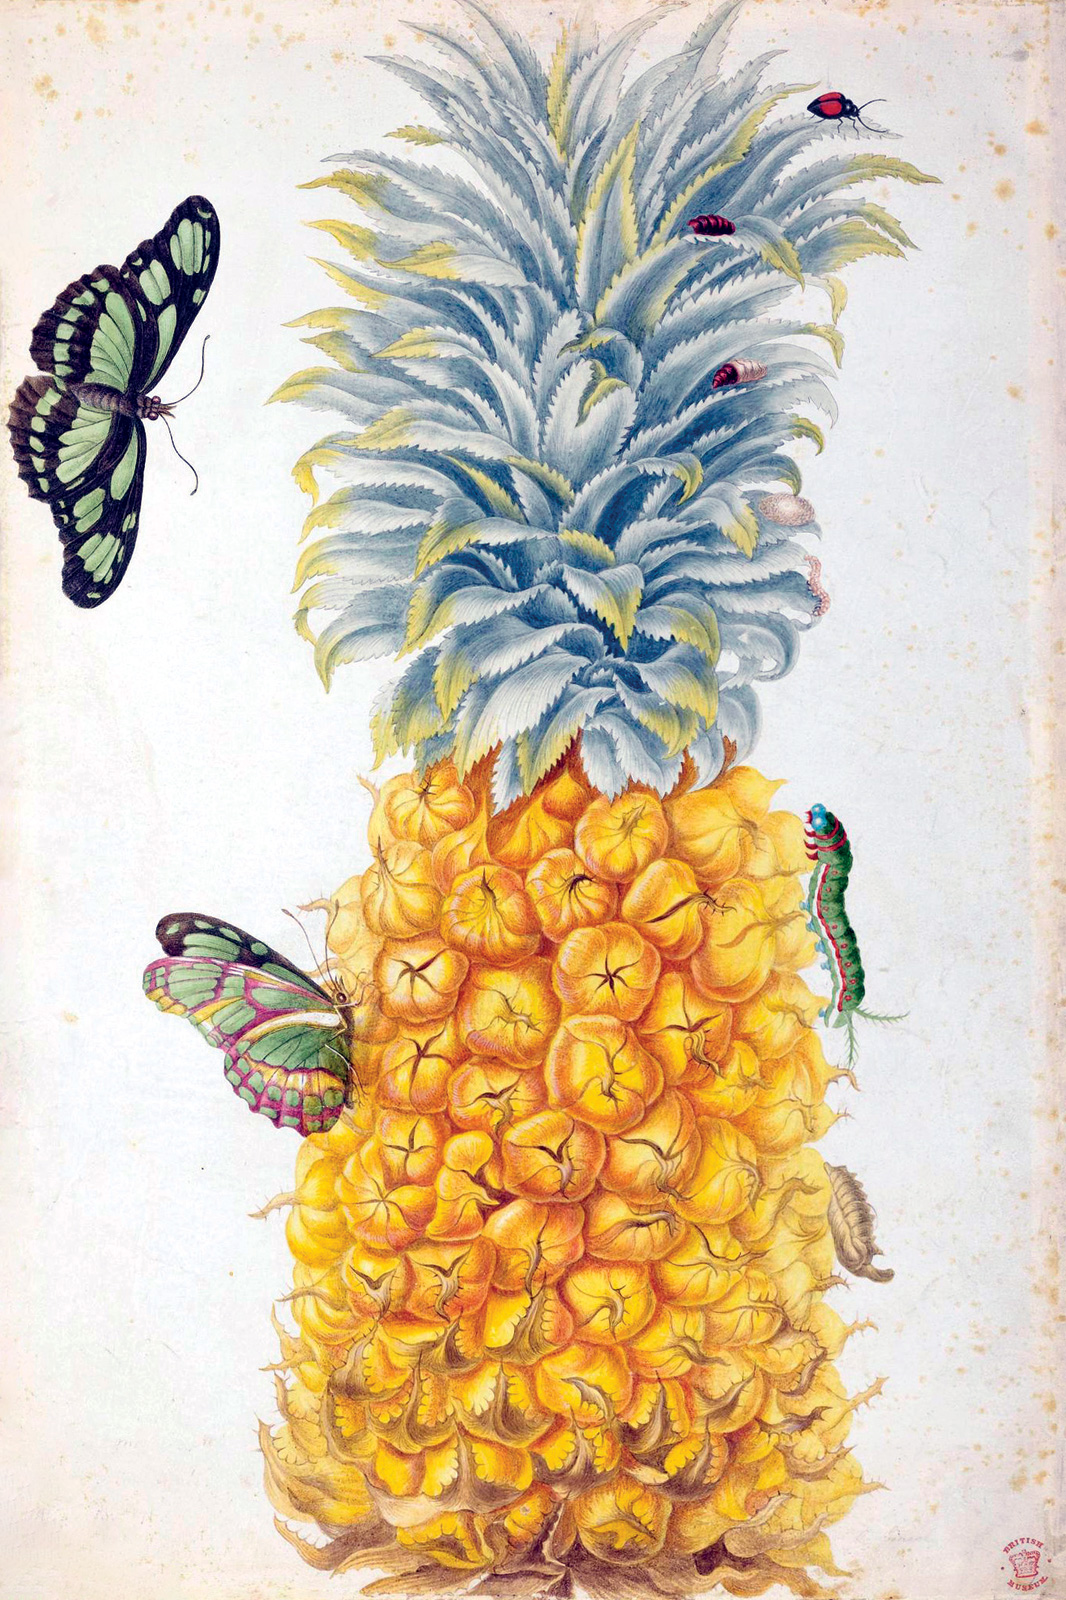 Maria Sibylla Merian, *Piña con oruga, crisálida, dos mariposas y una catarina*, 1701-1705. British Museum 